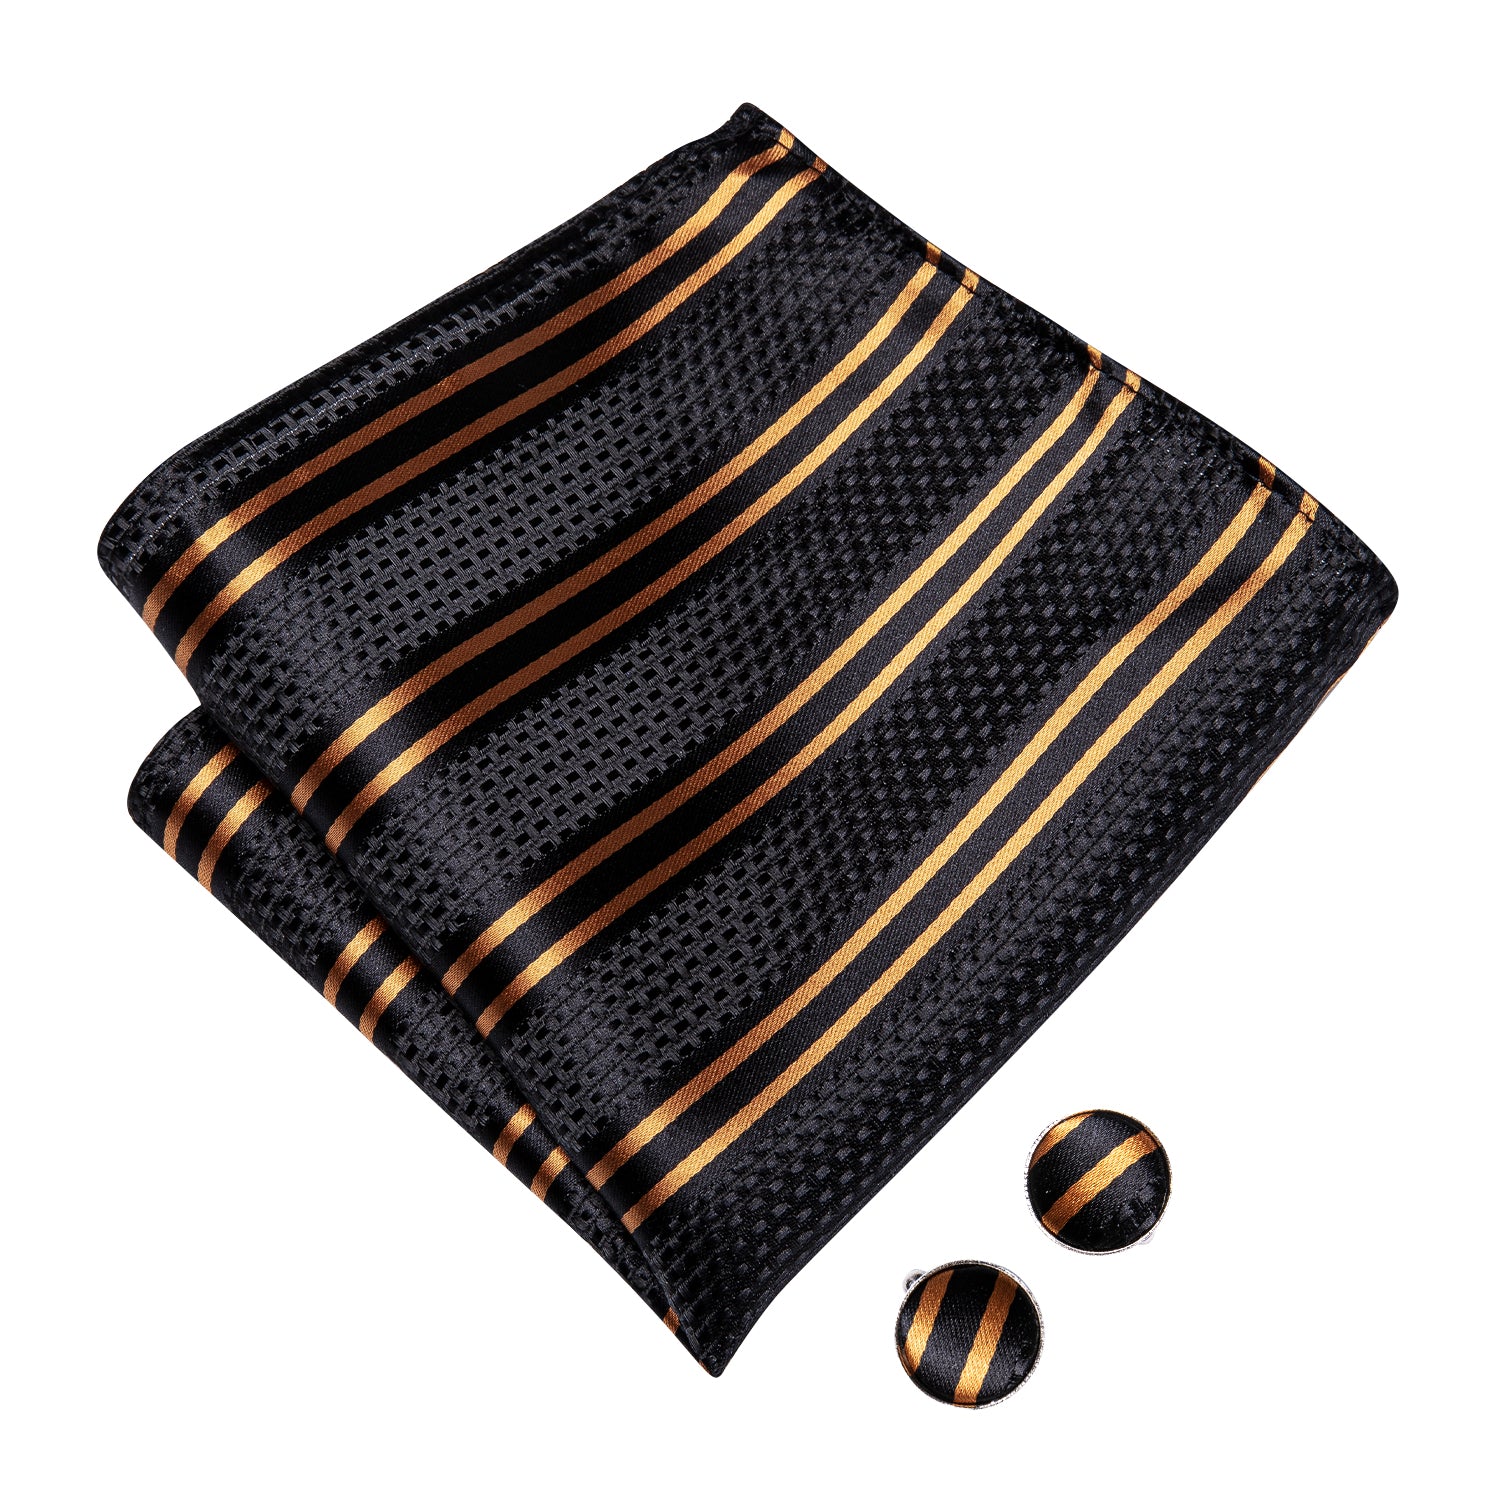 Black Golden Striped Pre-tied Bow Tie Hanky Cufflinks Set